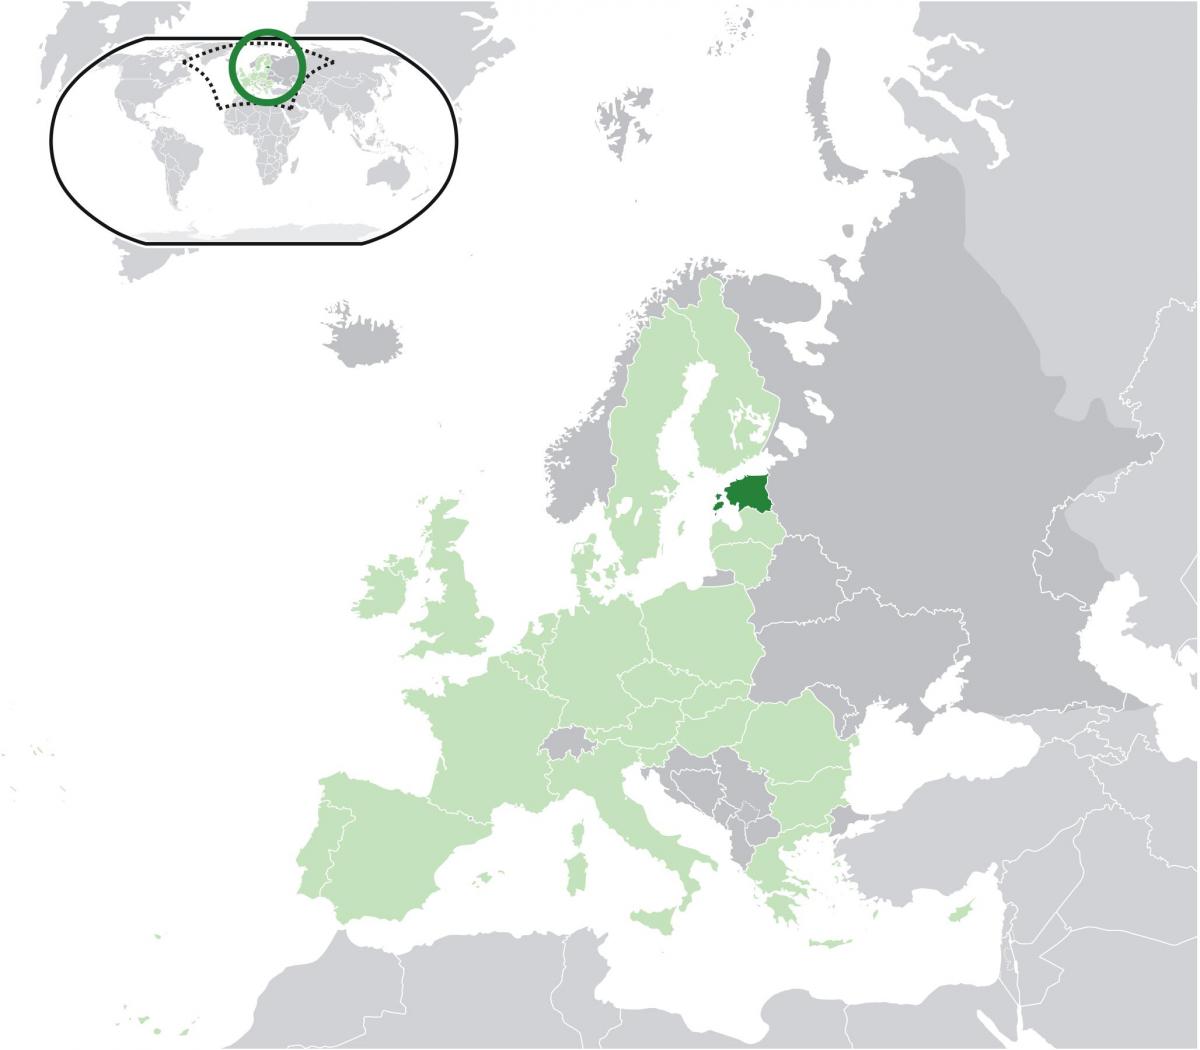 Estonia en el mapa de europa